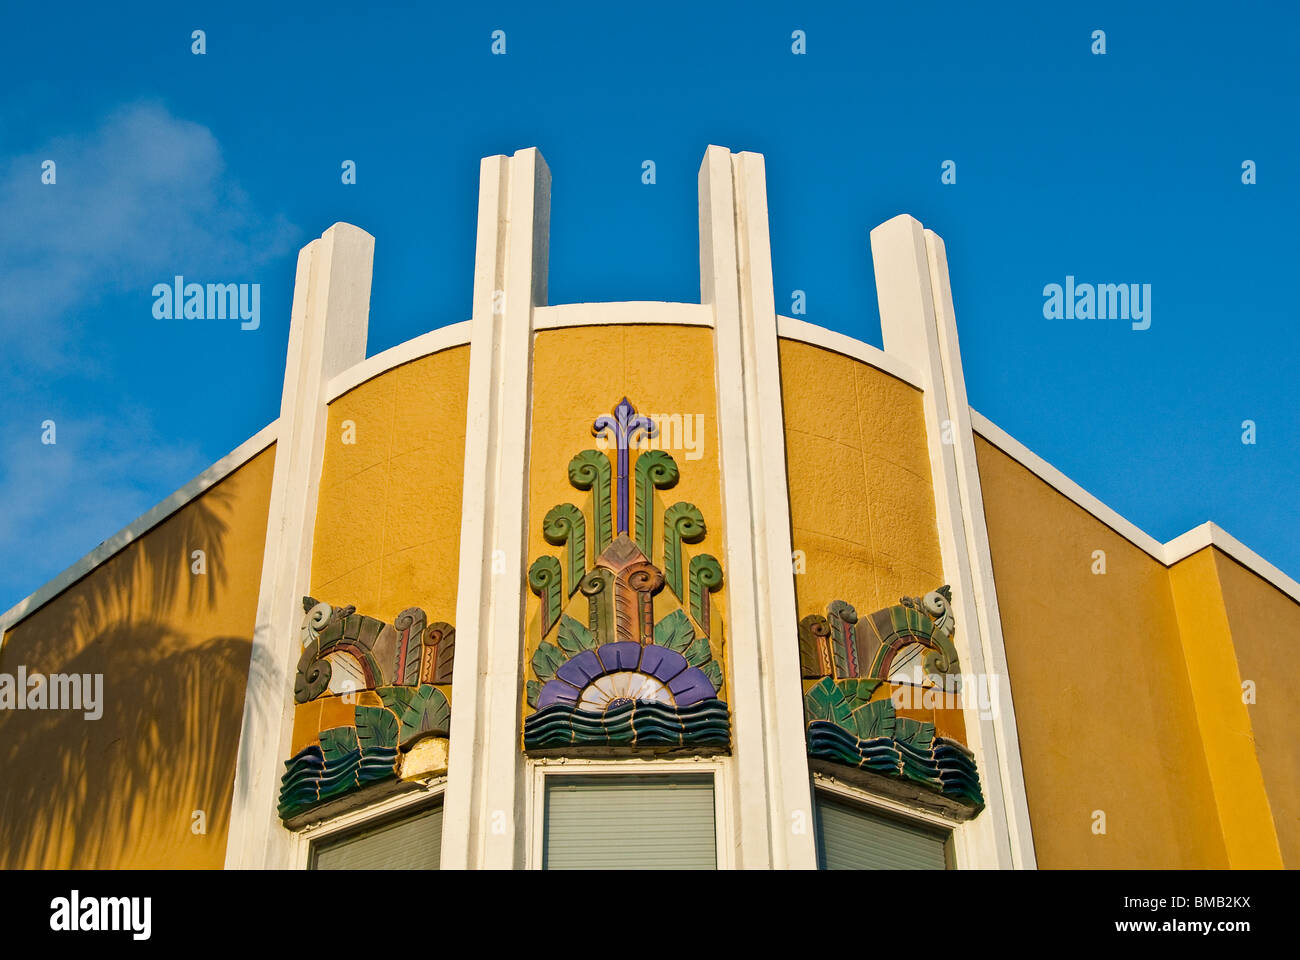 Detalle exterior en Cadet Hotel histórico en el corazón del distrito Art Deco de Miami Beach, Florida, EE.UU. Foto de stock